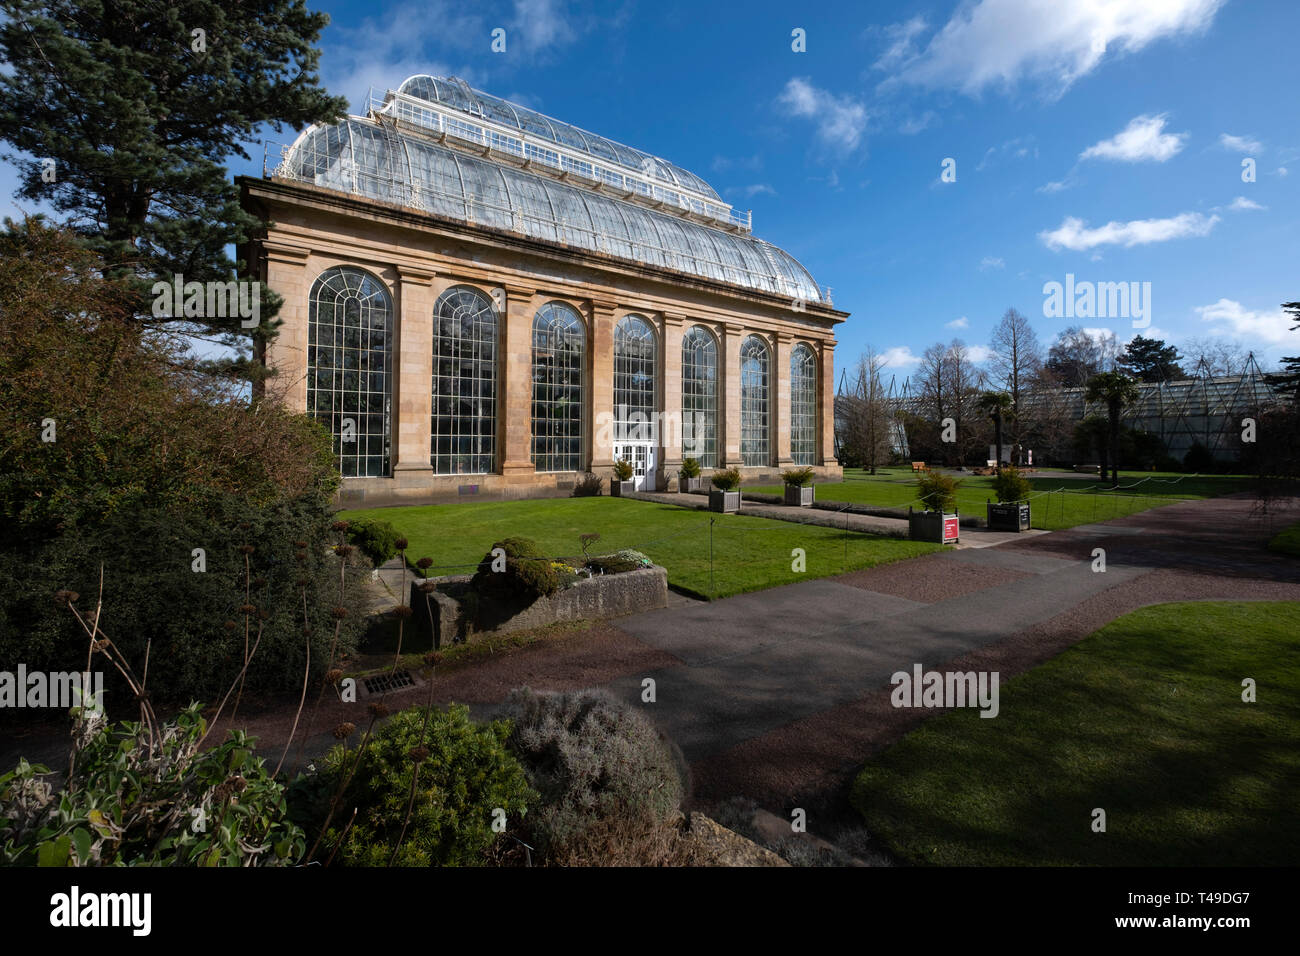 La serre Palm House au Royal Botanic Garden d'Edimbourg, Ecosse, Royaume-Uni Banque D'Images